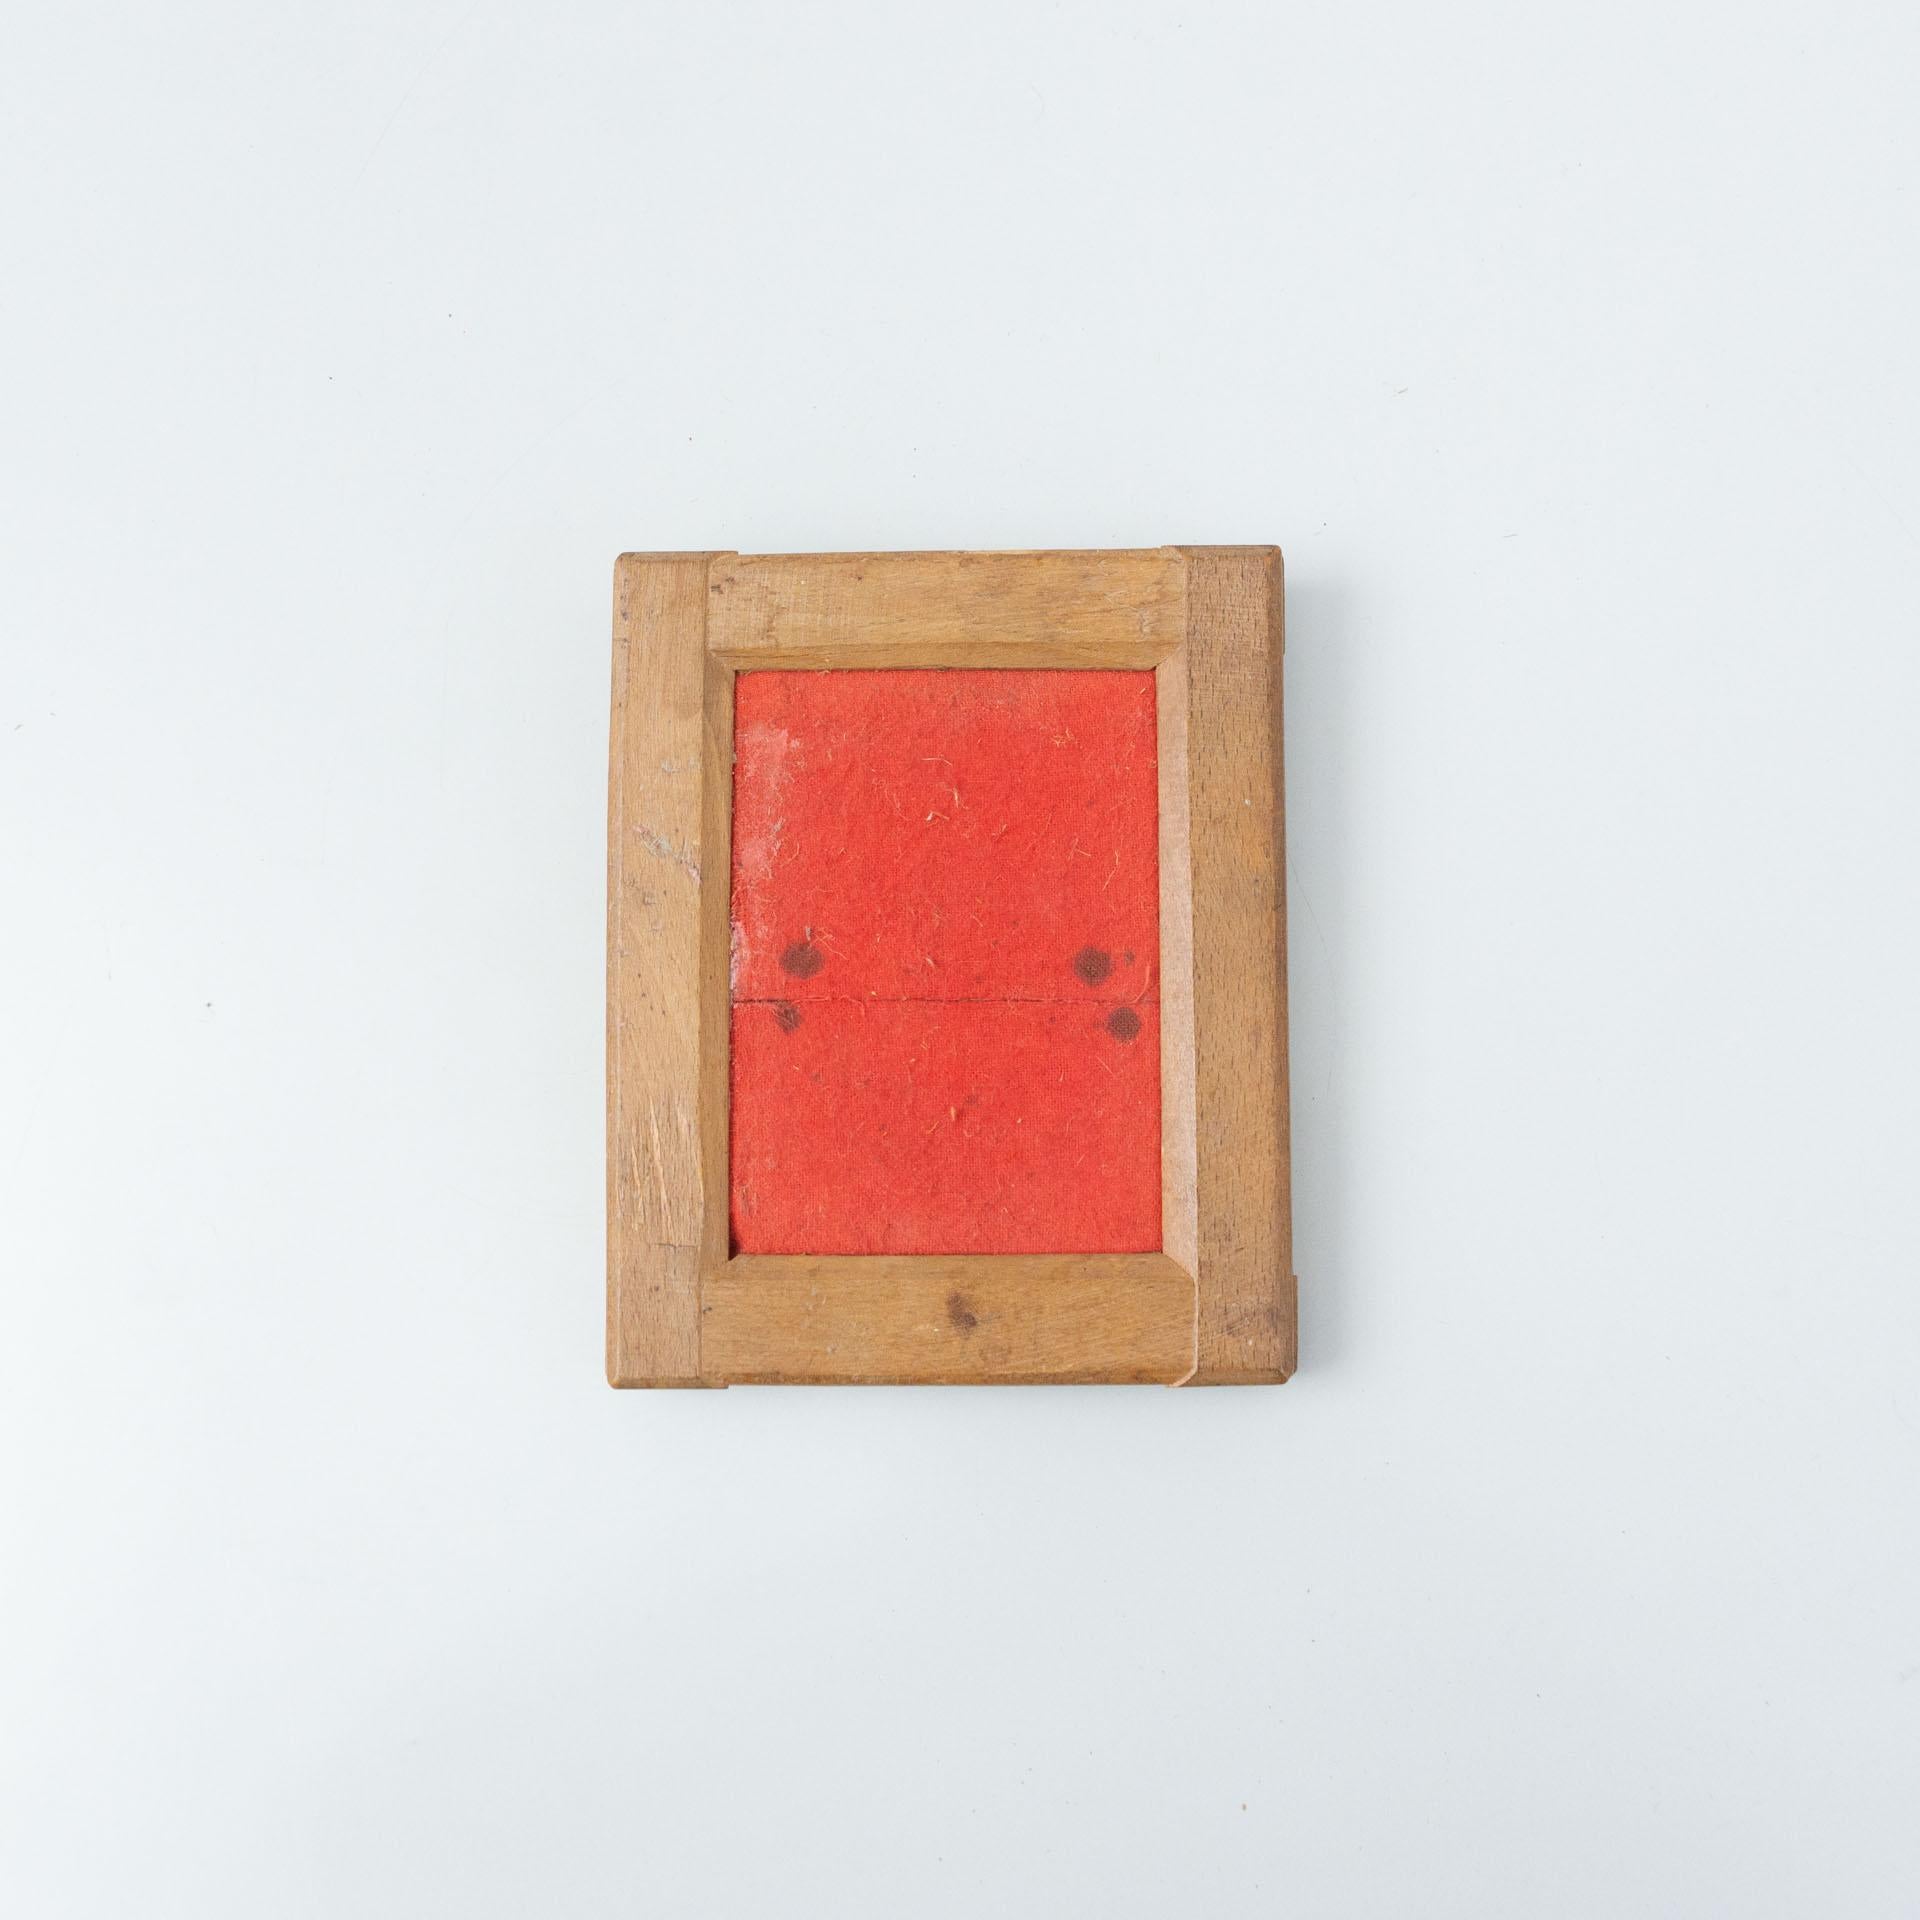 Cadre en bois ancien avec intérieur en feutre rouge.
Par un artiste inconnu, vers 1940.

En état d'origine, avec une usure mineure conforme à l'âge et à l'utilisation, préservant une belle patine.

Matériaux :
Bois
Feutre

Dimensions